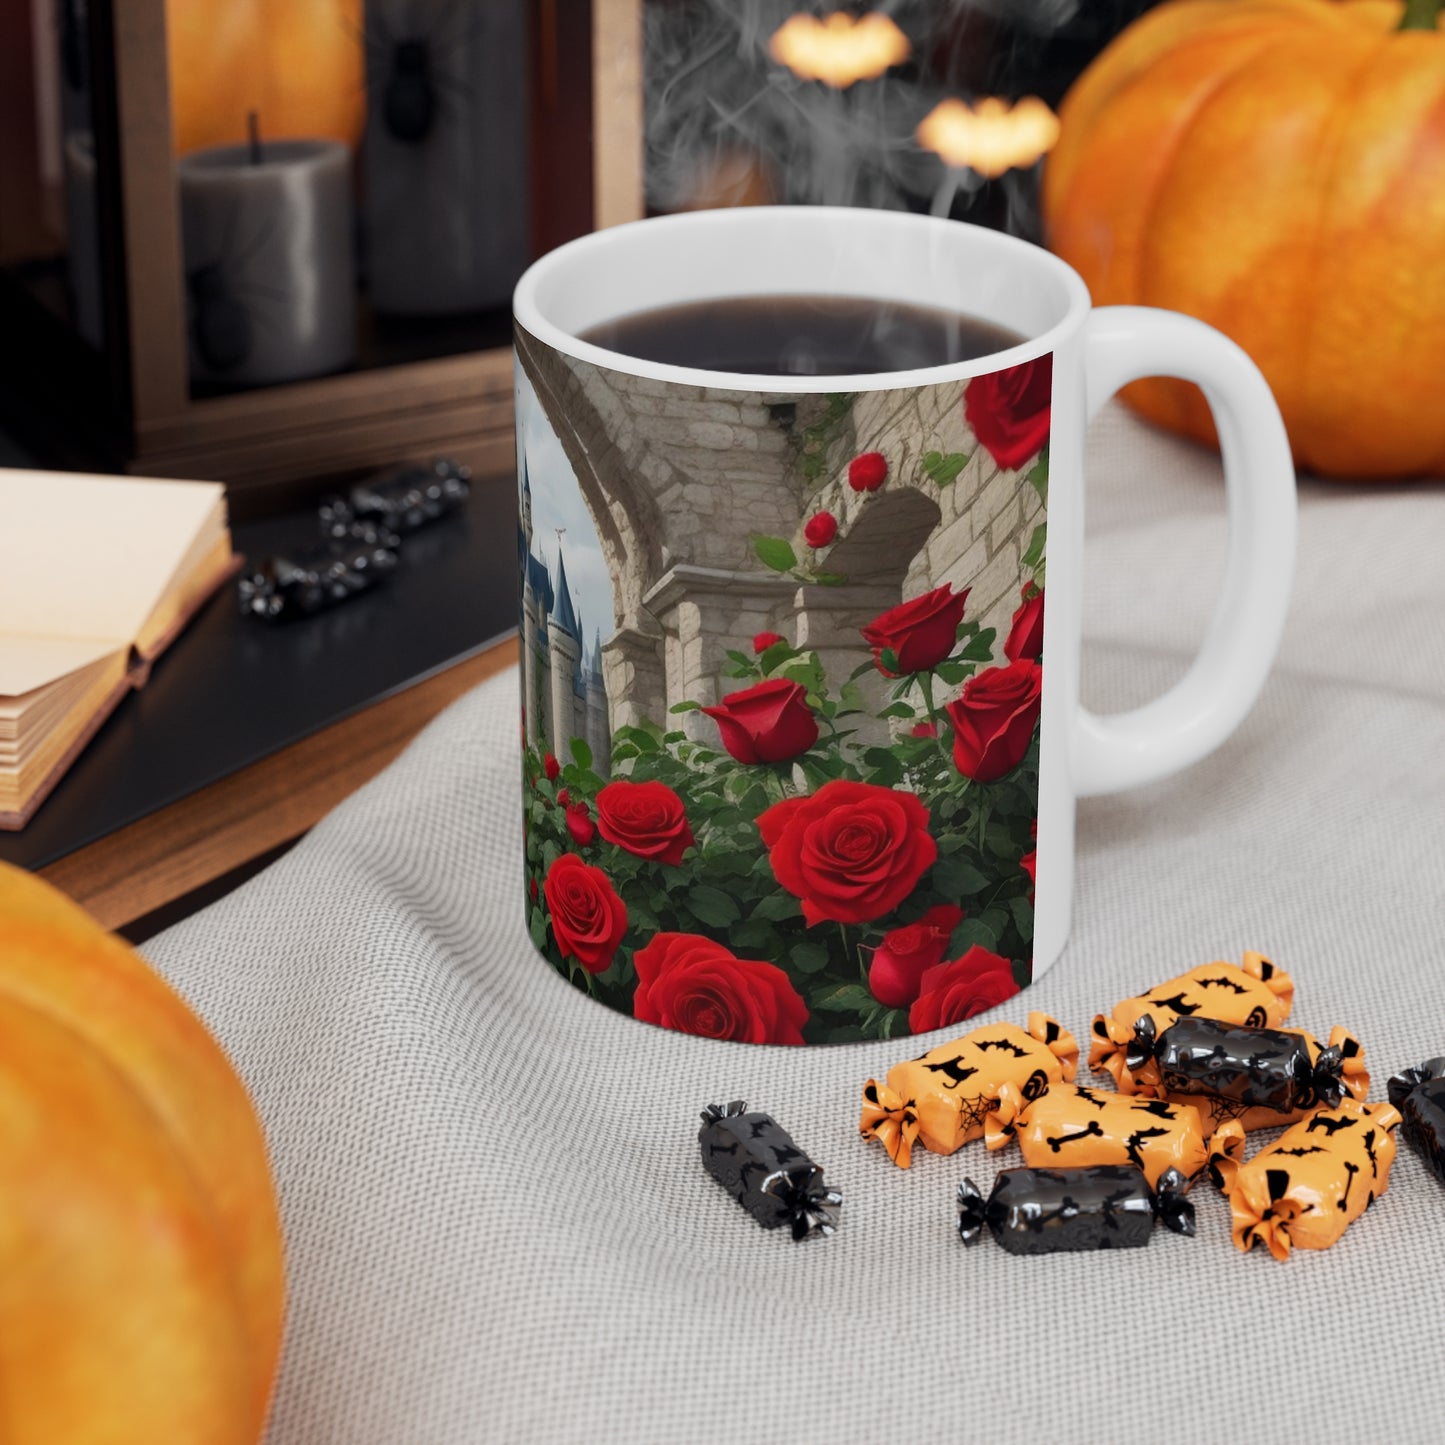 Red Roses Around Castle Mug - Ceramic Coffee Mug 11oz